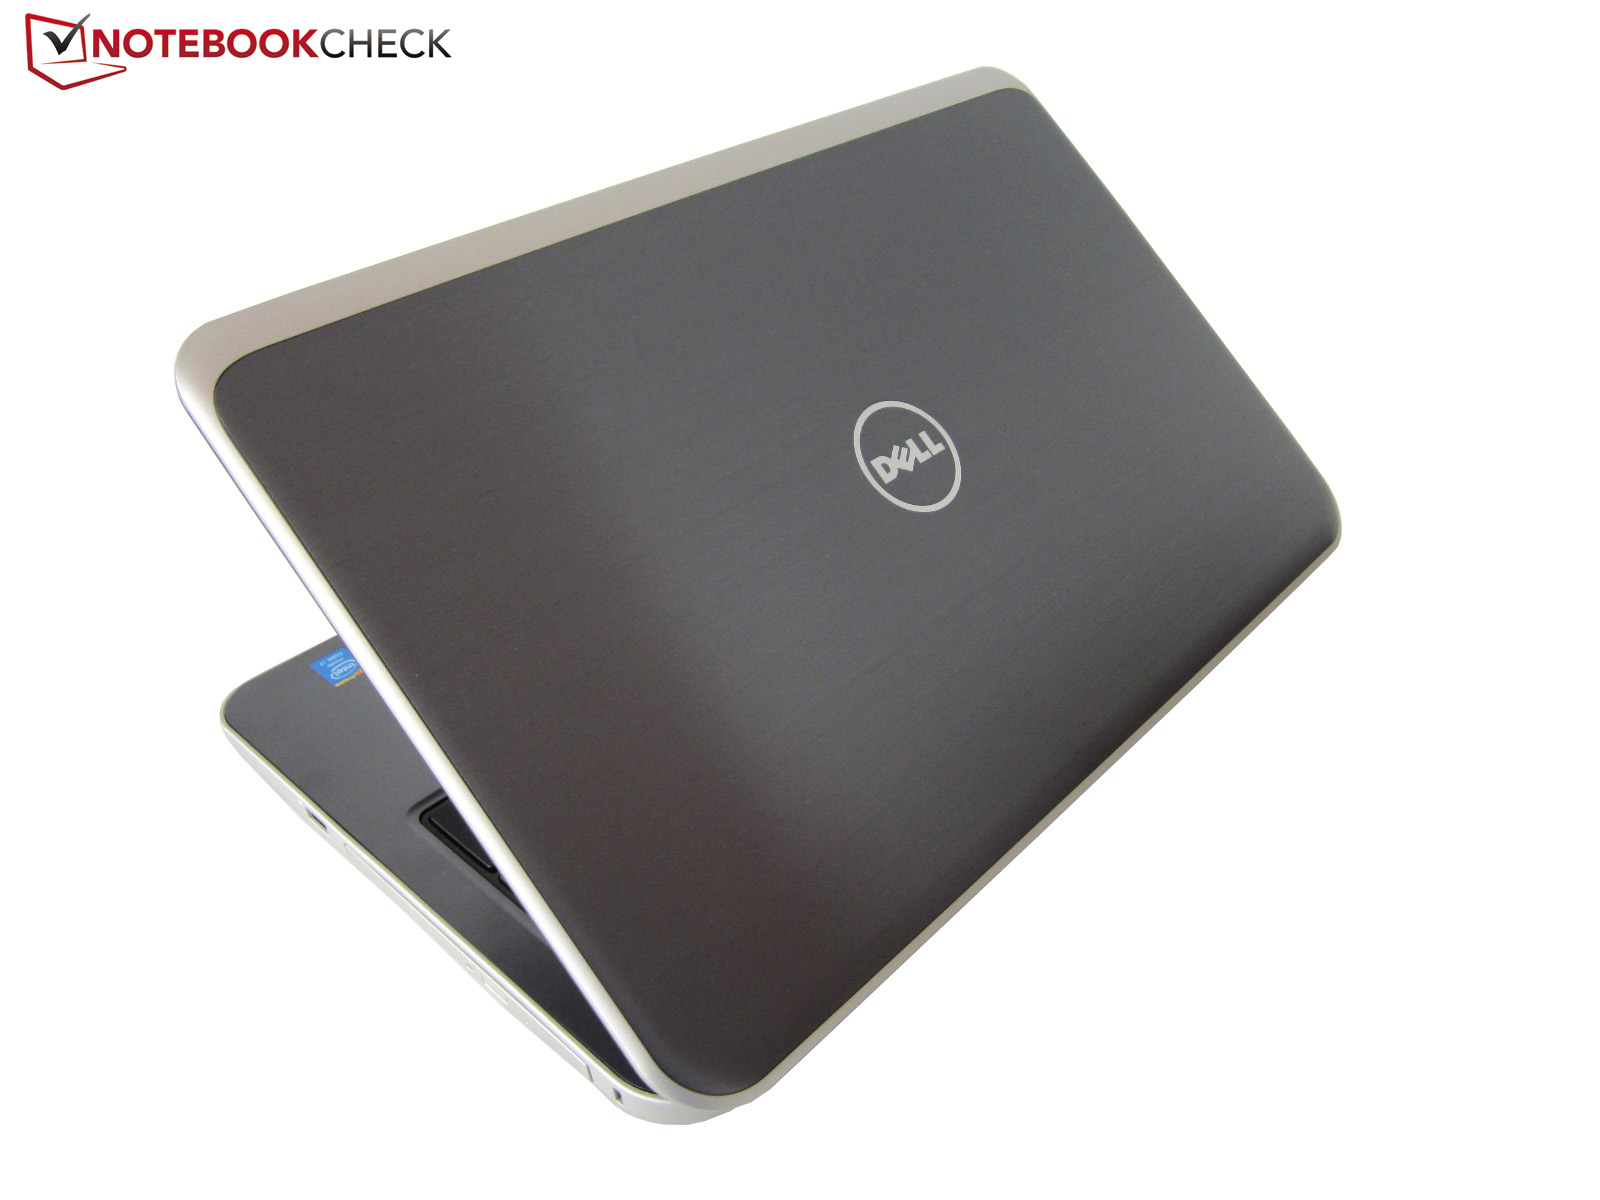 Купить Ноутбук Dell Inspiron 5758-1523